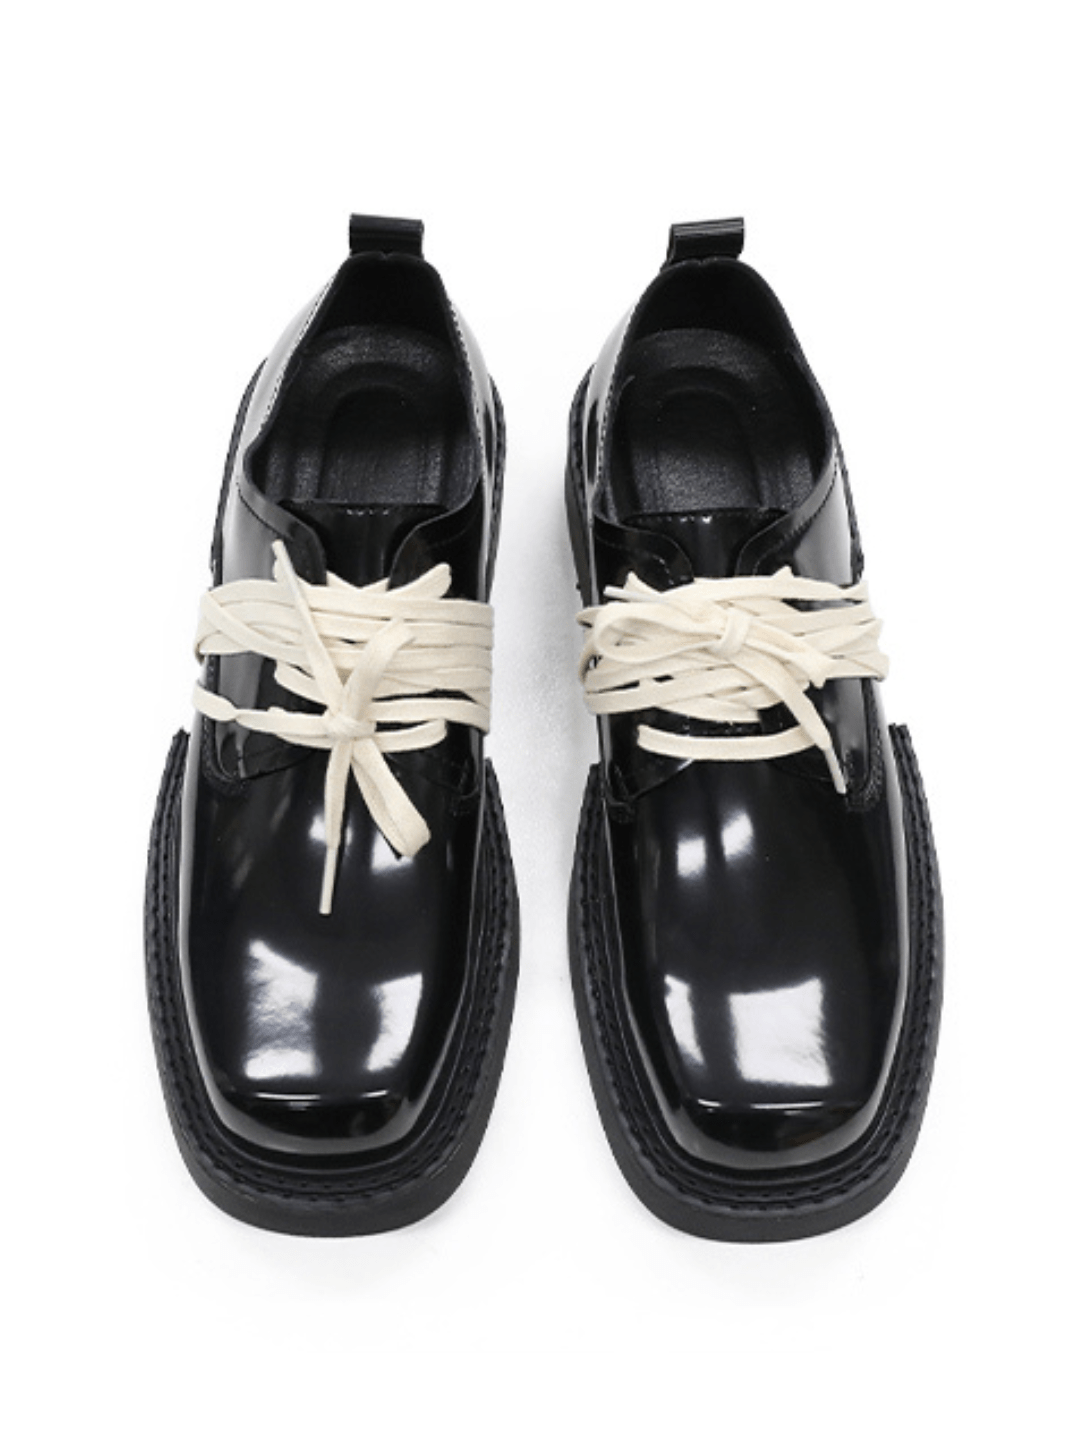 레이스 디자인 low-top leather shoes na891 